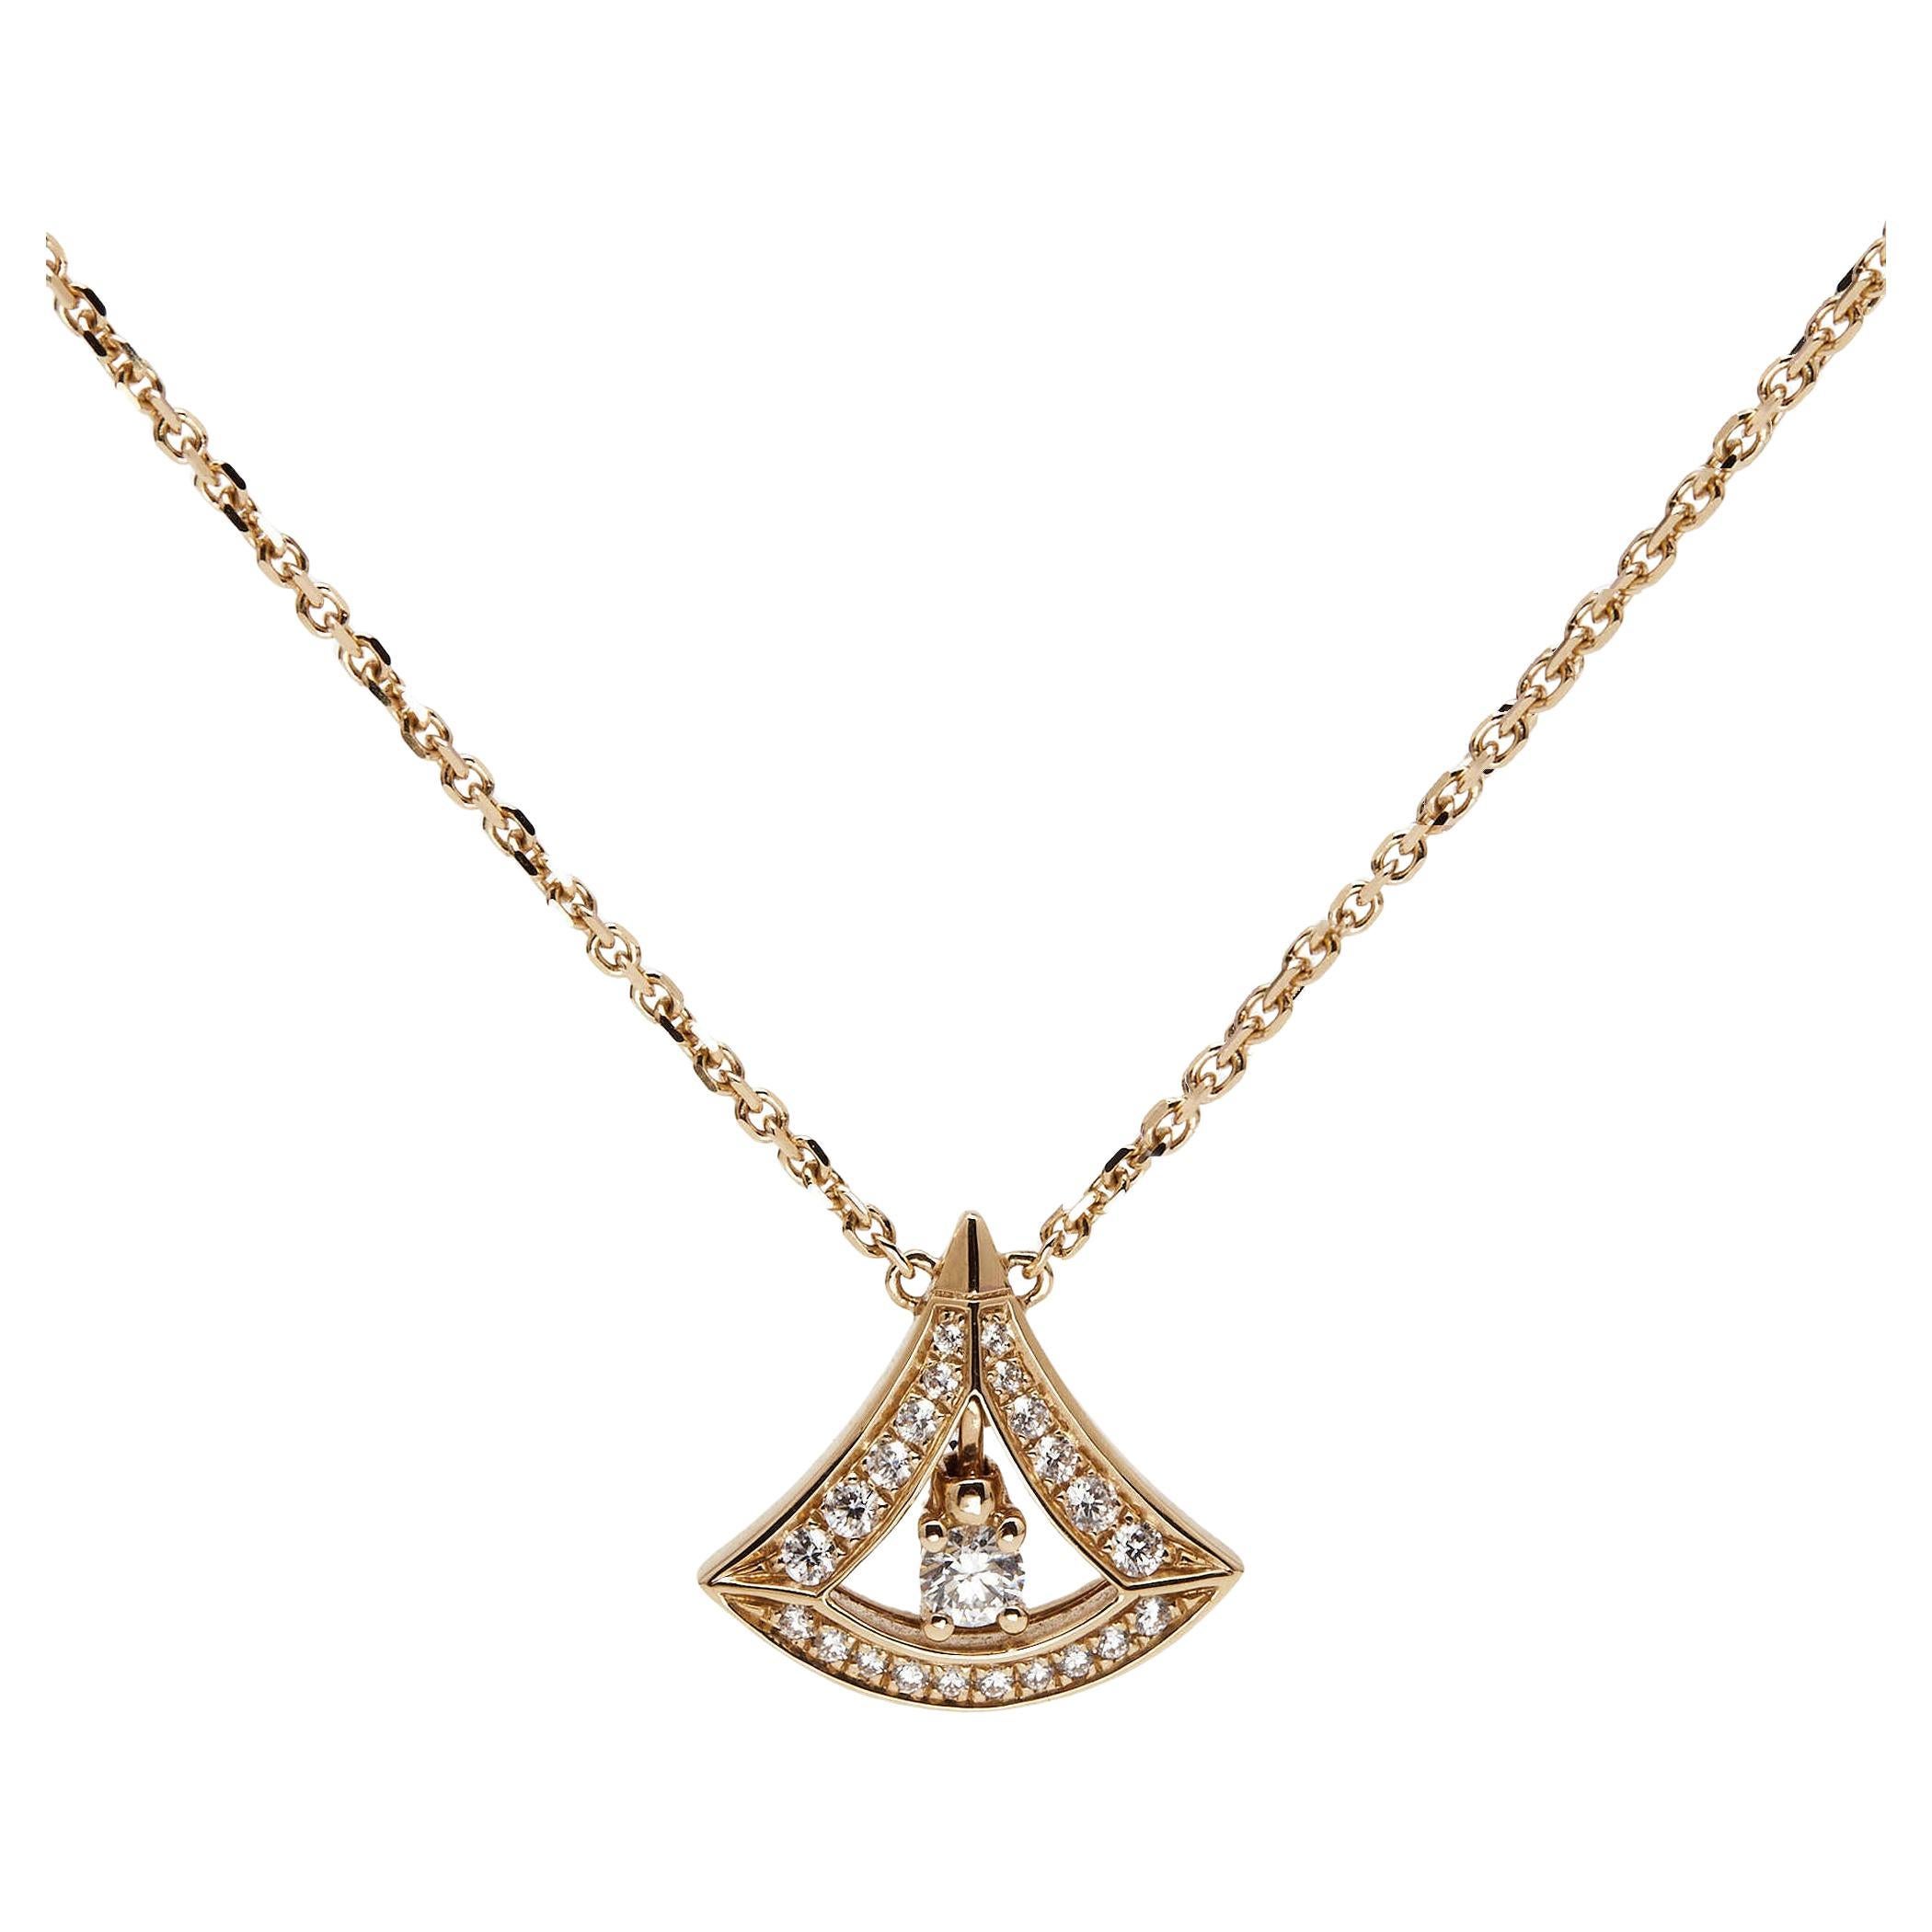 DFS Group and Bulgari launch exclusive 18-karat gold Divas' Dream necklace